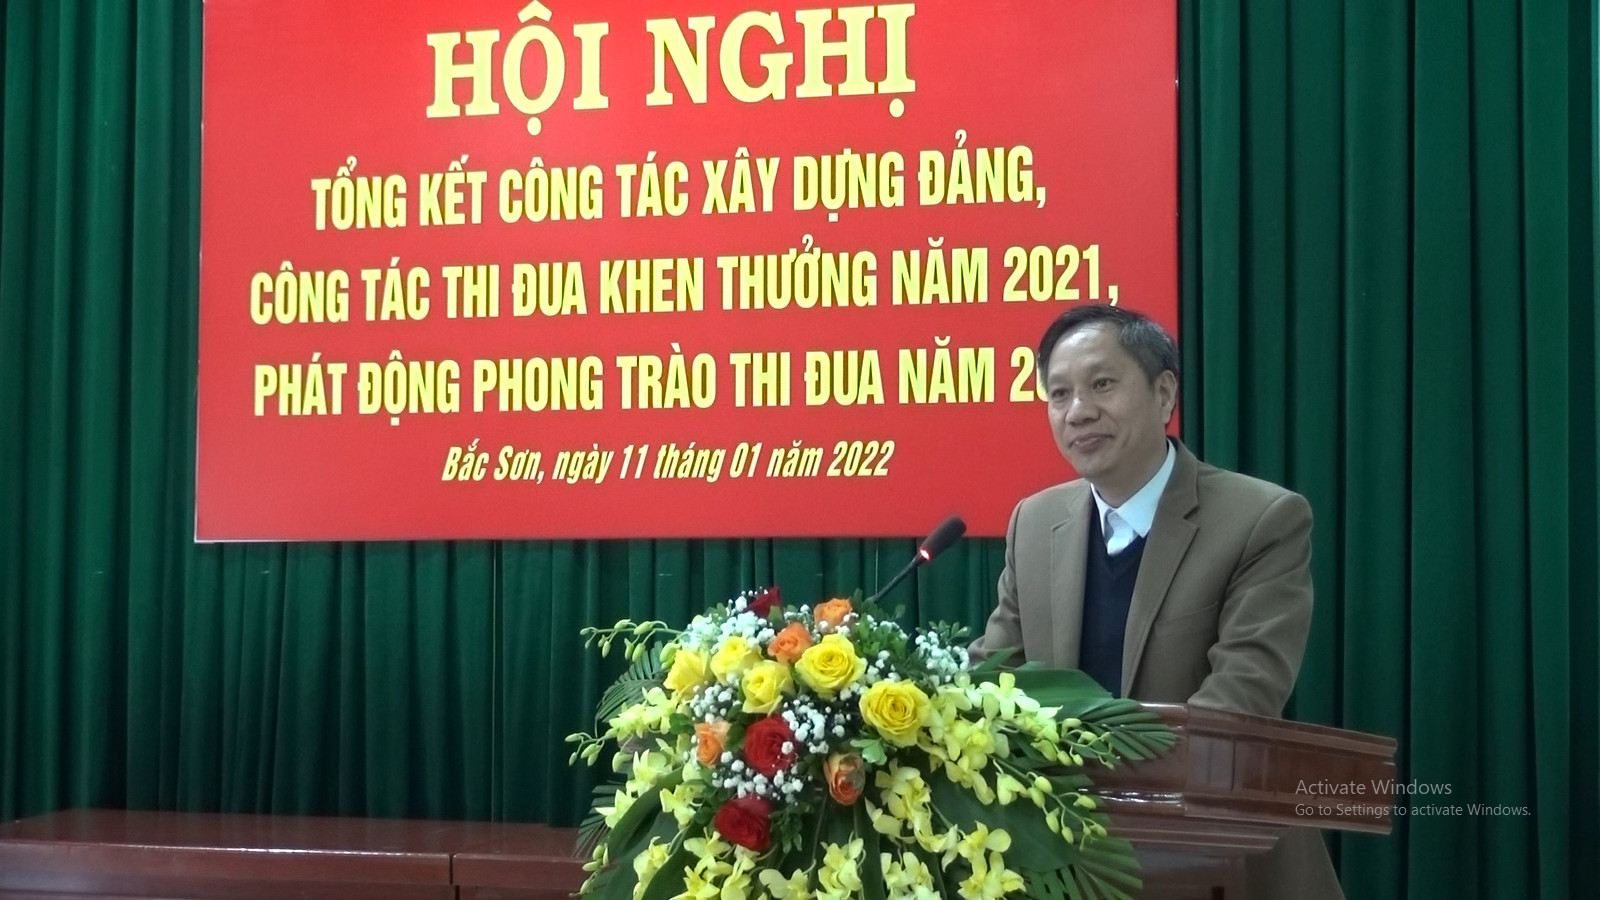 Đảng bộ phường Bắc Sơn Hội nghị tổng kết công tác xây dựng đảng, công tác thi đua khen thưởng năm 2021, phát động phong trào thi đua năm 2022